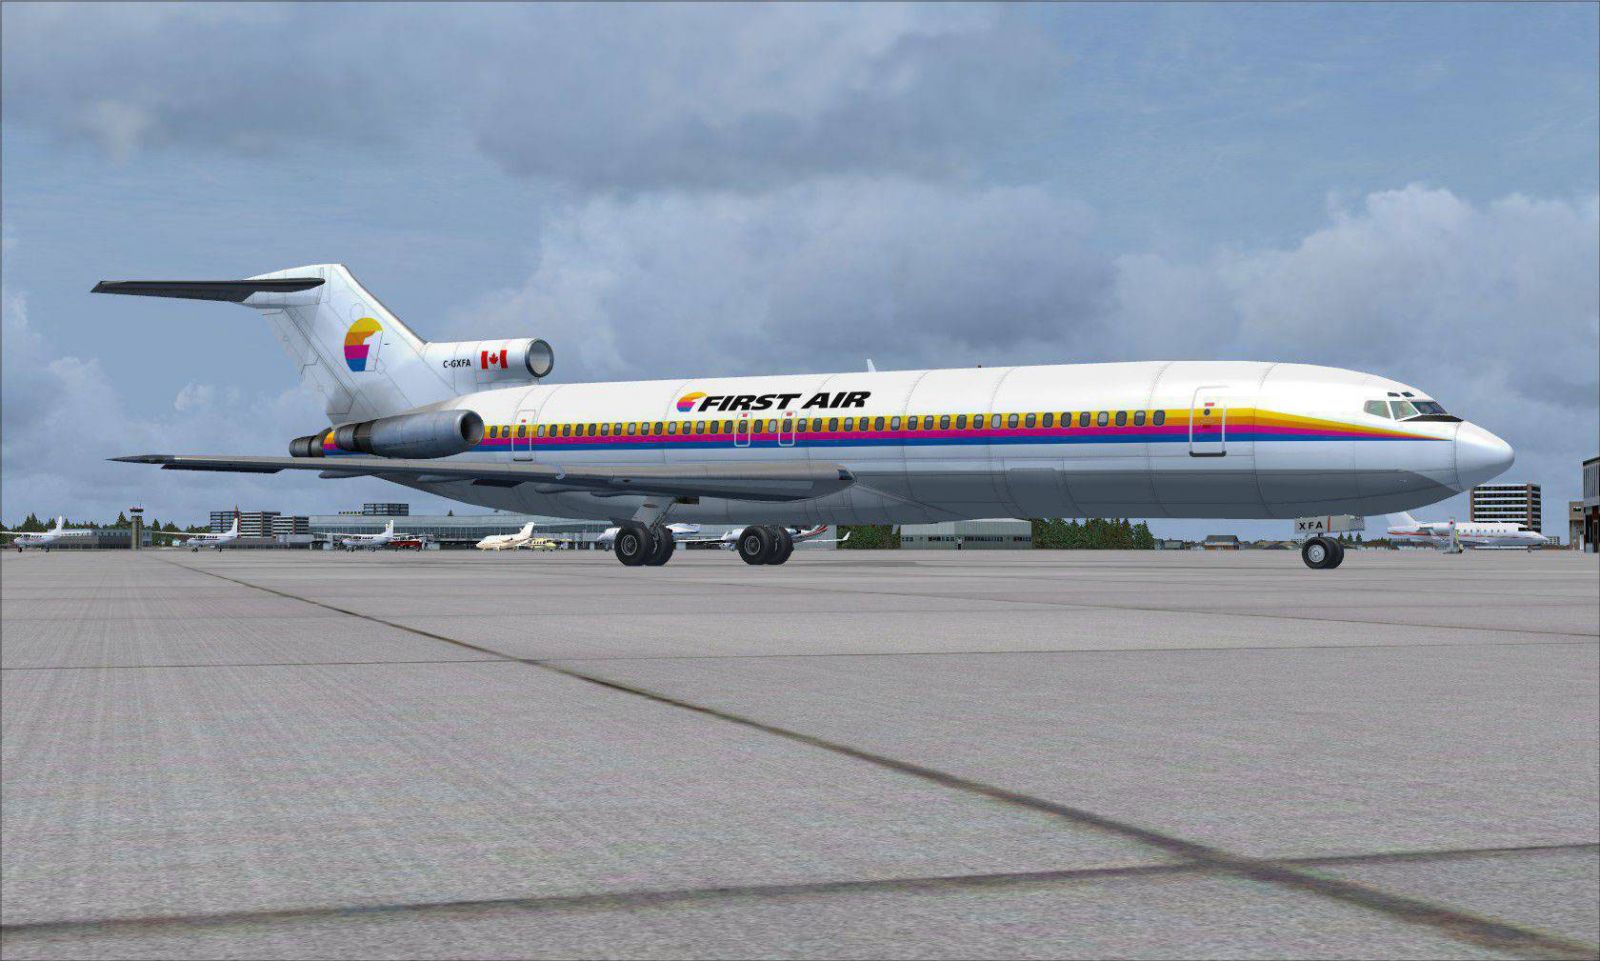 Boeing 727-200 next